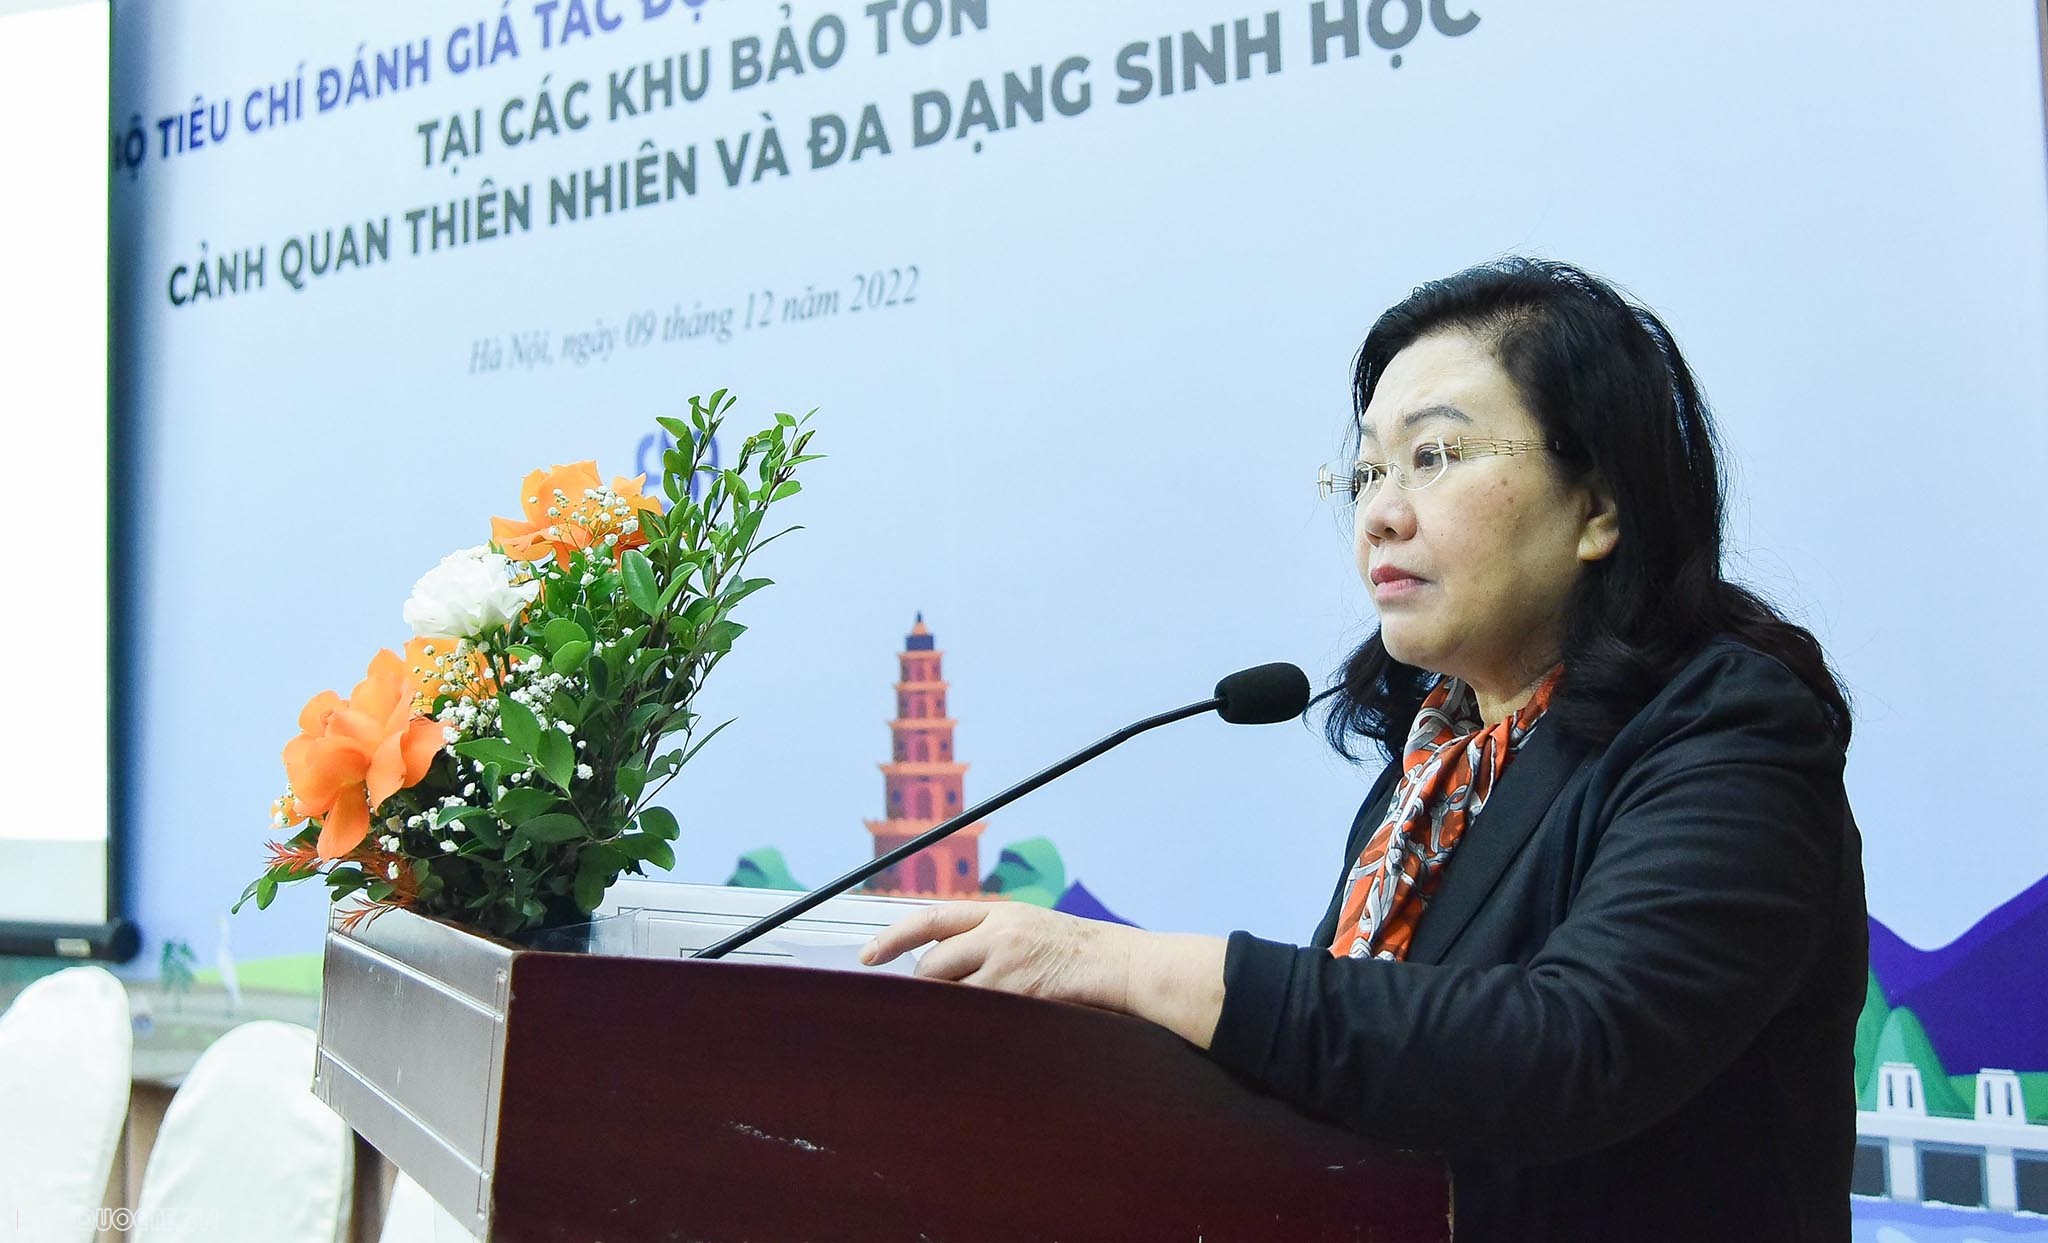 Đại sứ Nguyễn Thị Hoàng Anh, Chủ tịch Hội Luật quốc tế Việt Nam, nguyên Thẩm phán Toà án nhân dân tối cao